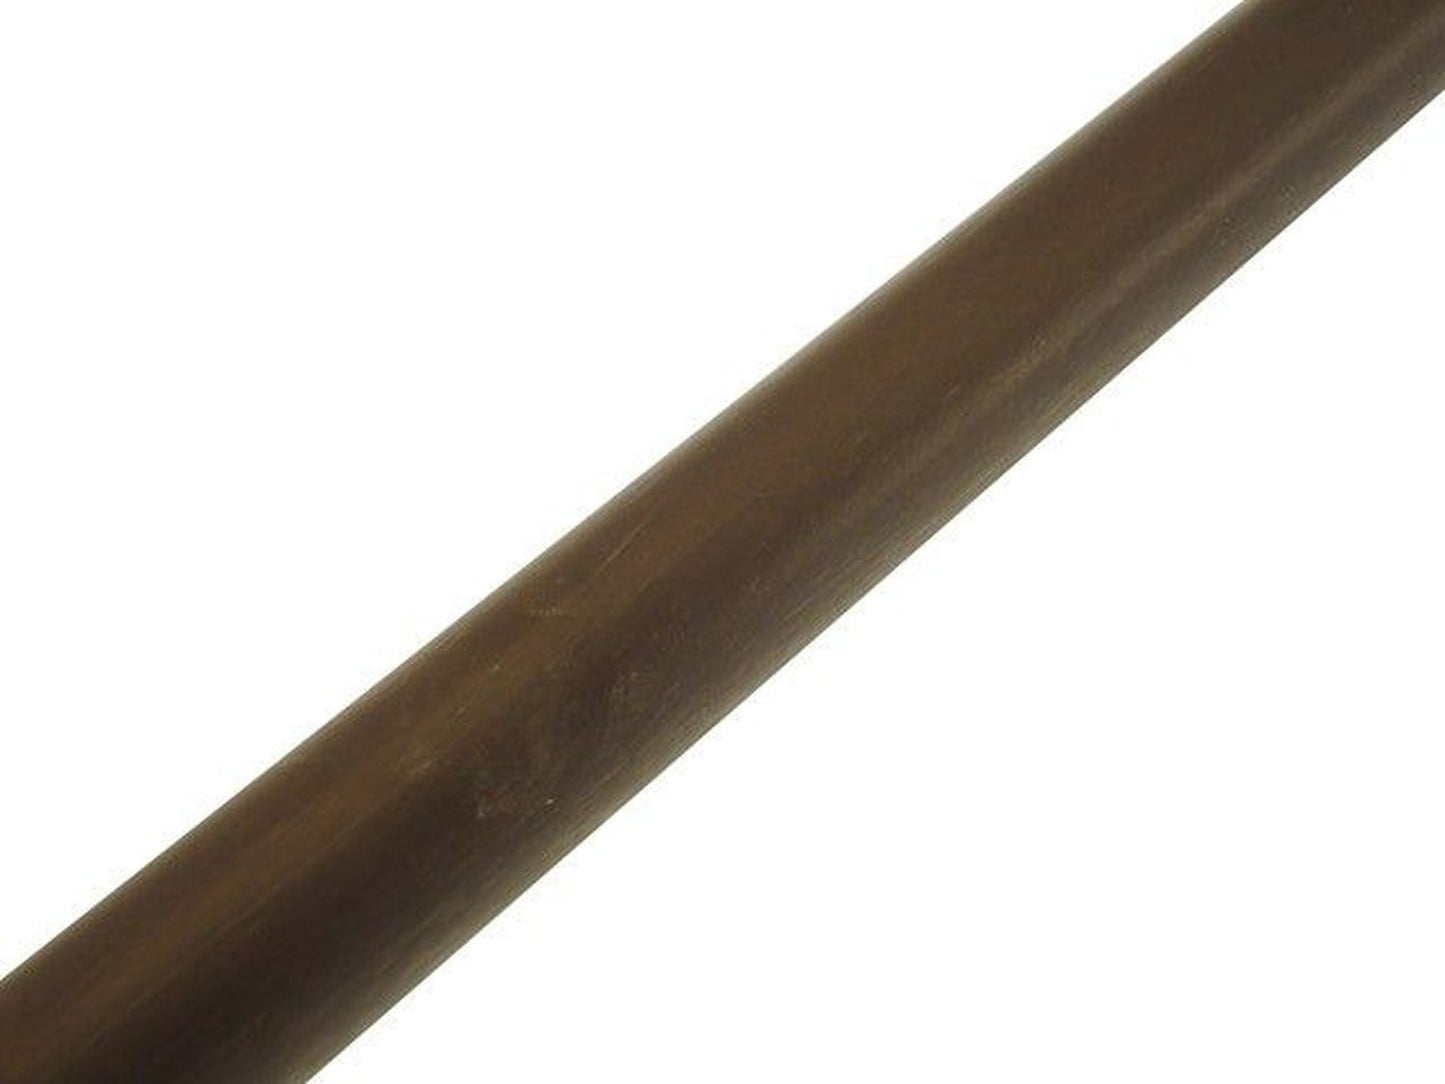 Bastone in legno per tende - Ø28mm x 200 cm